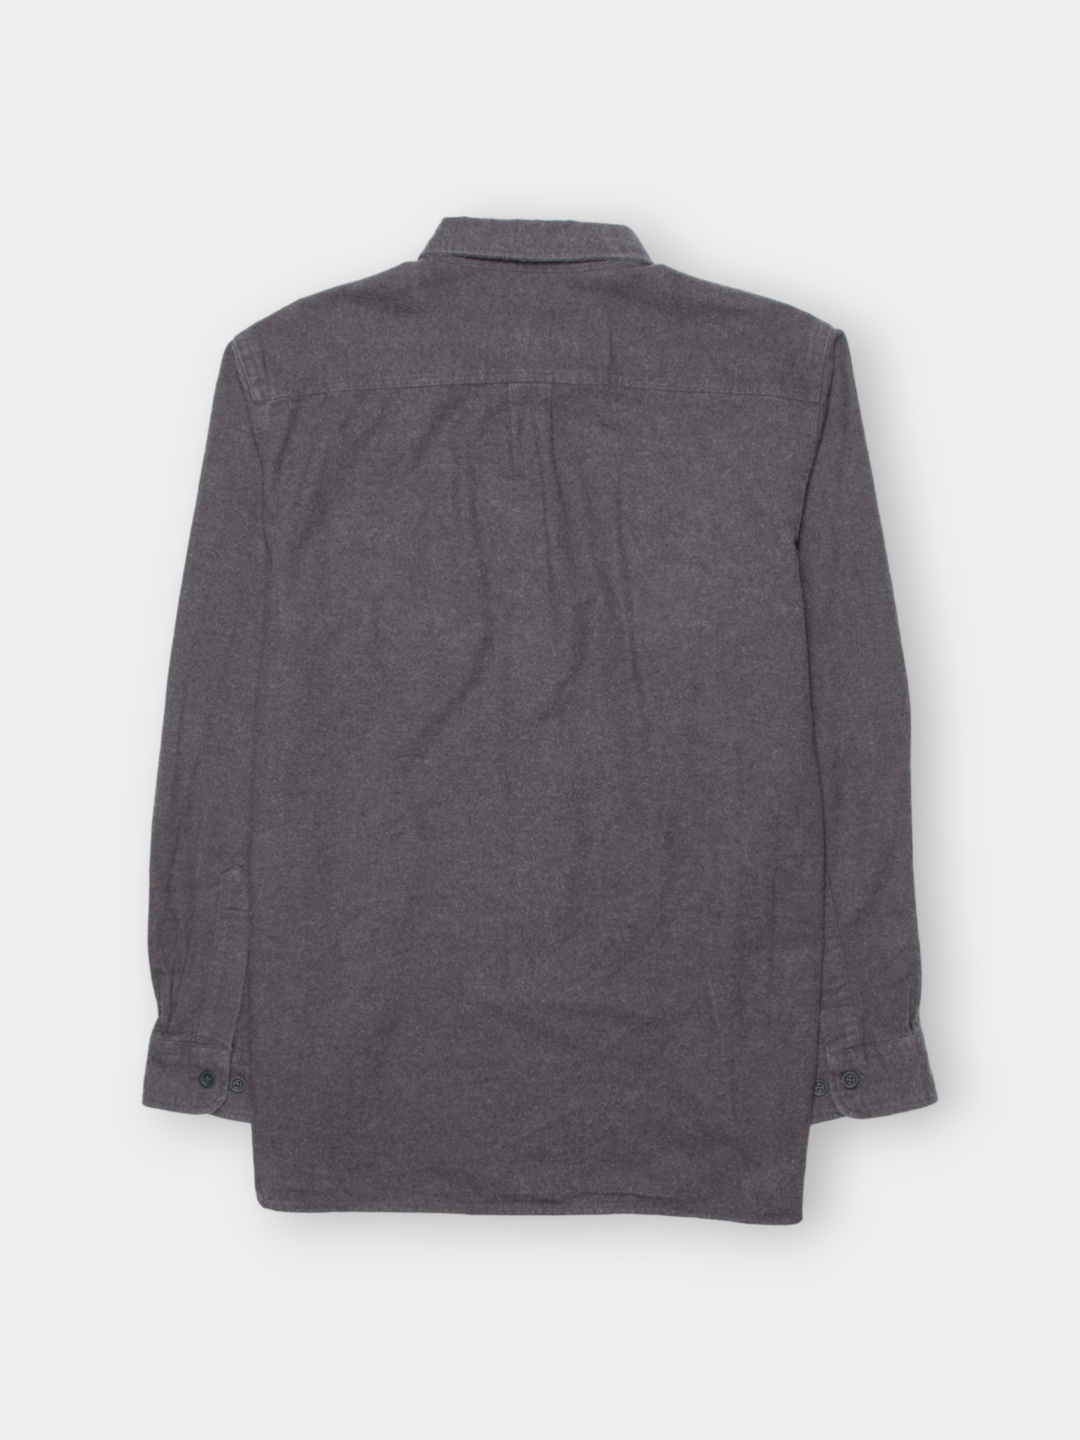 90s L.L. Bean Chamois Shirt (L)